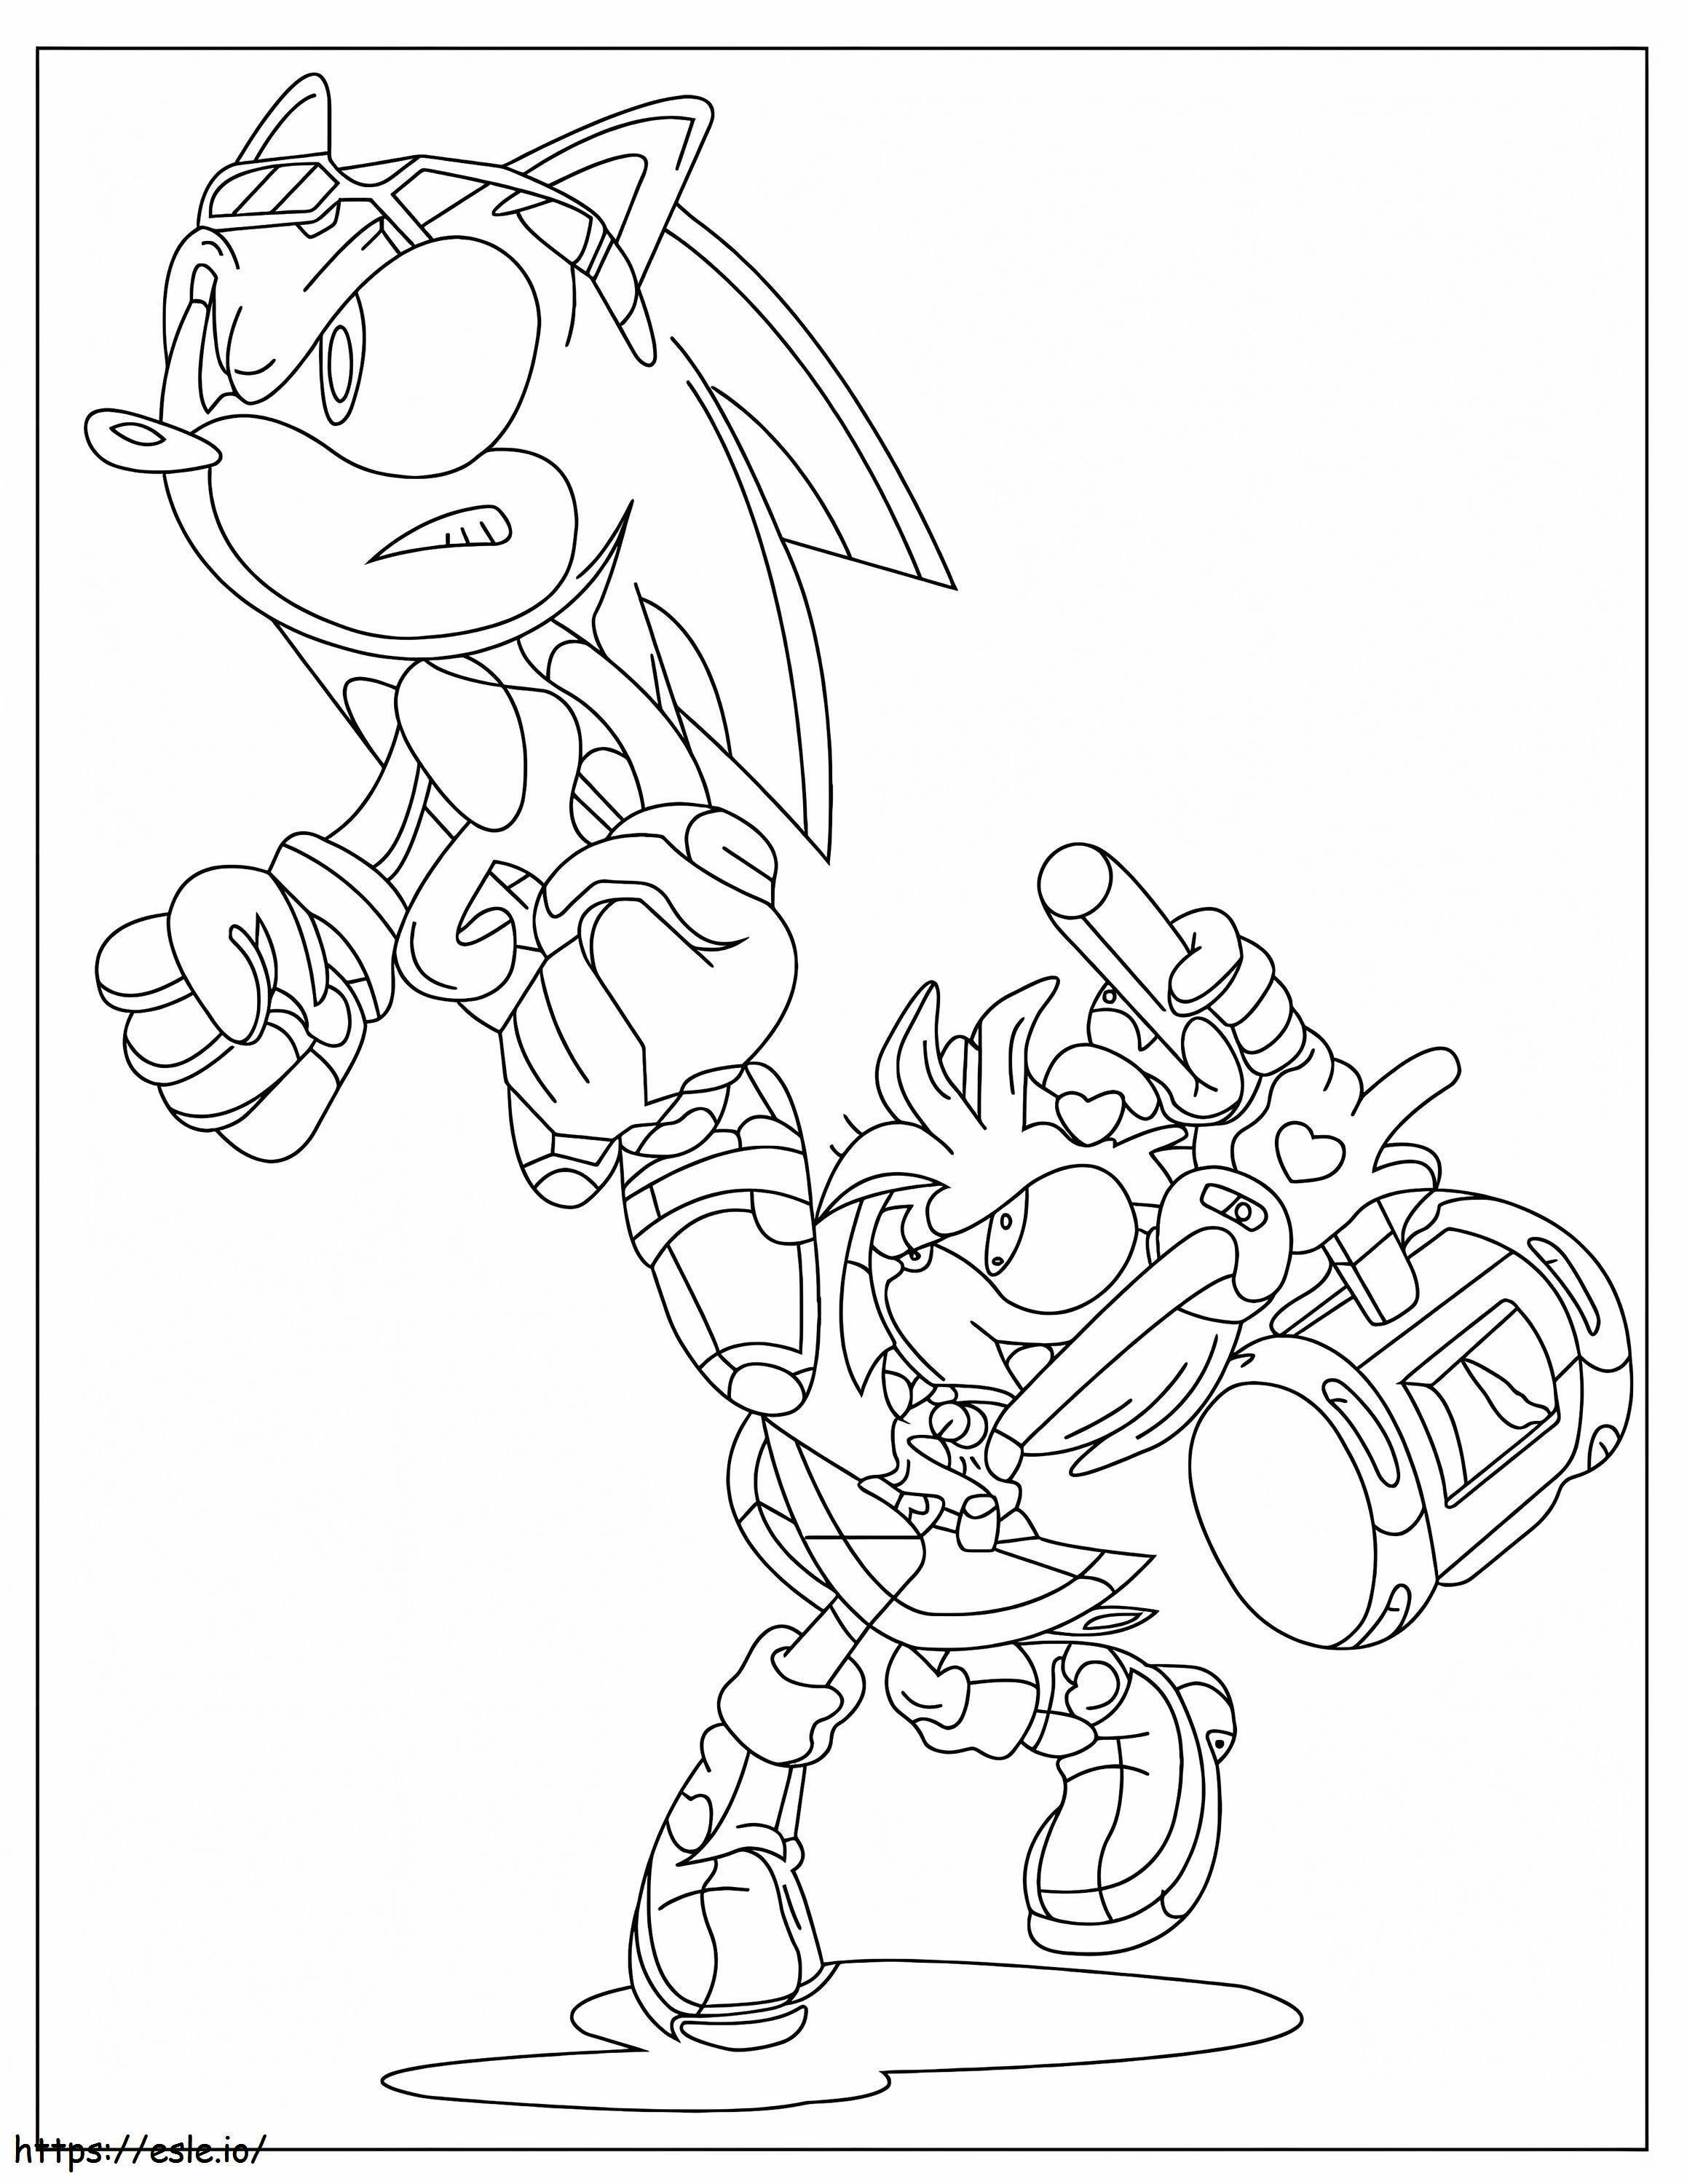 Amy Rose cu Sonic de colorat